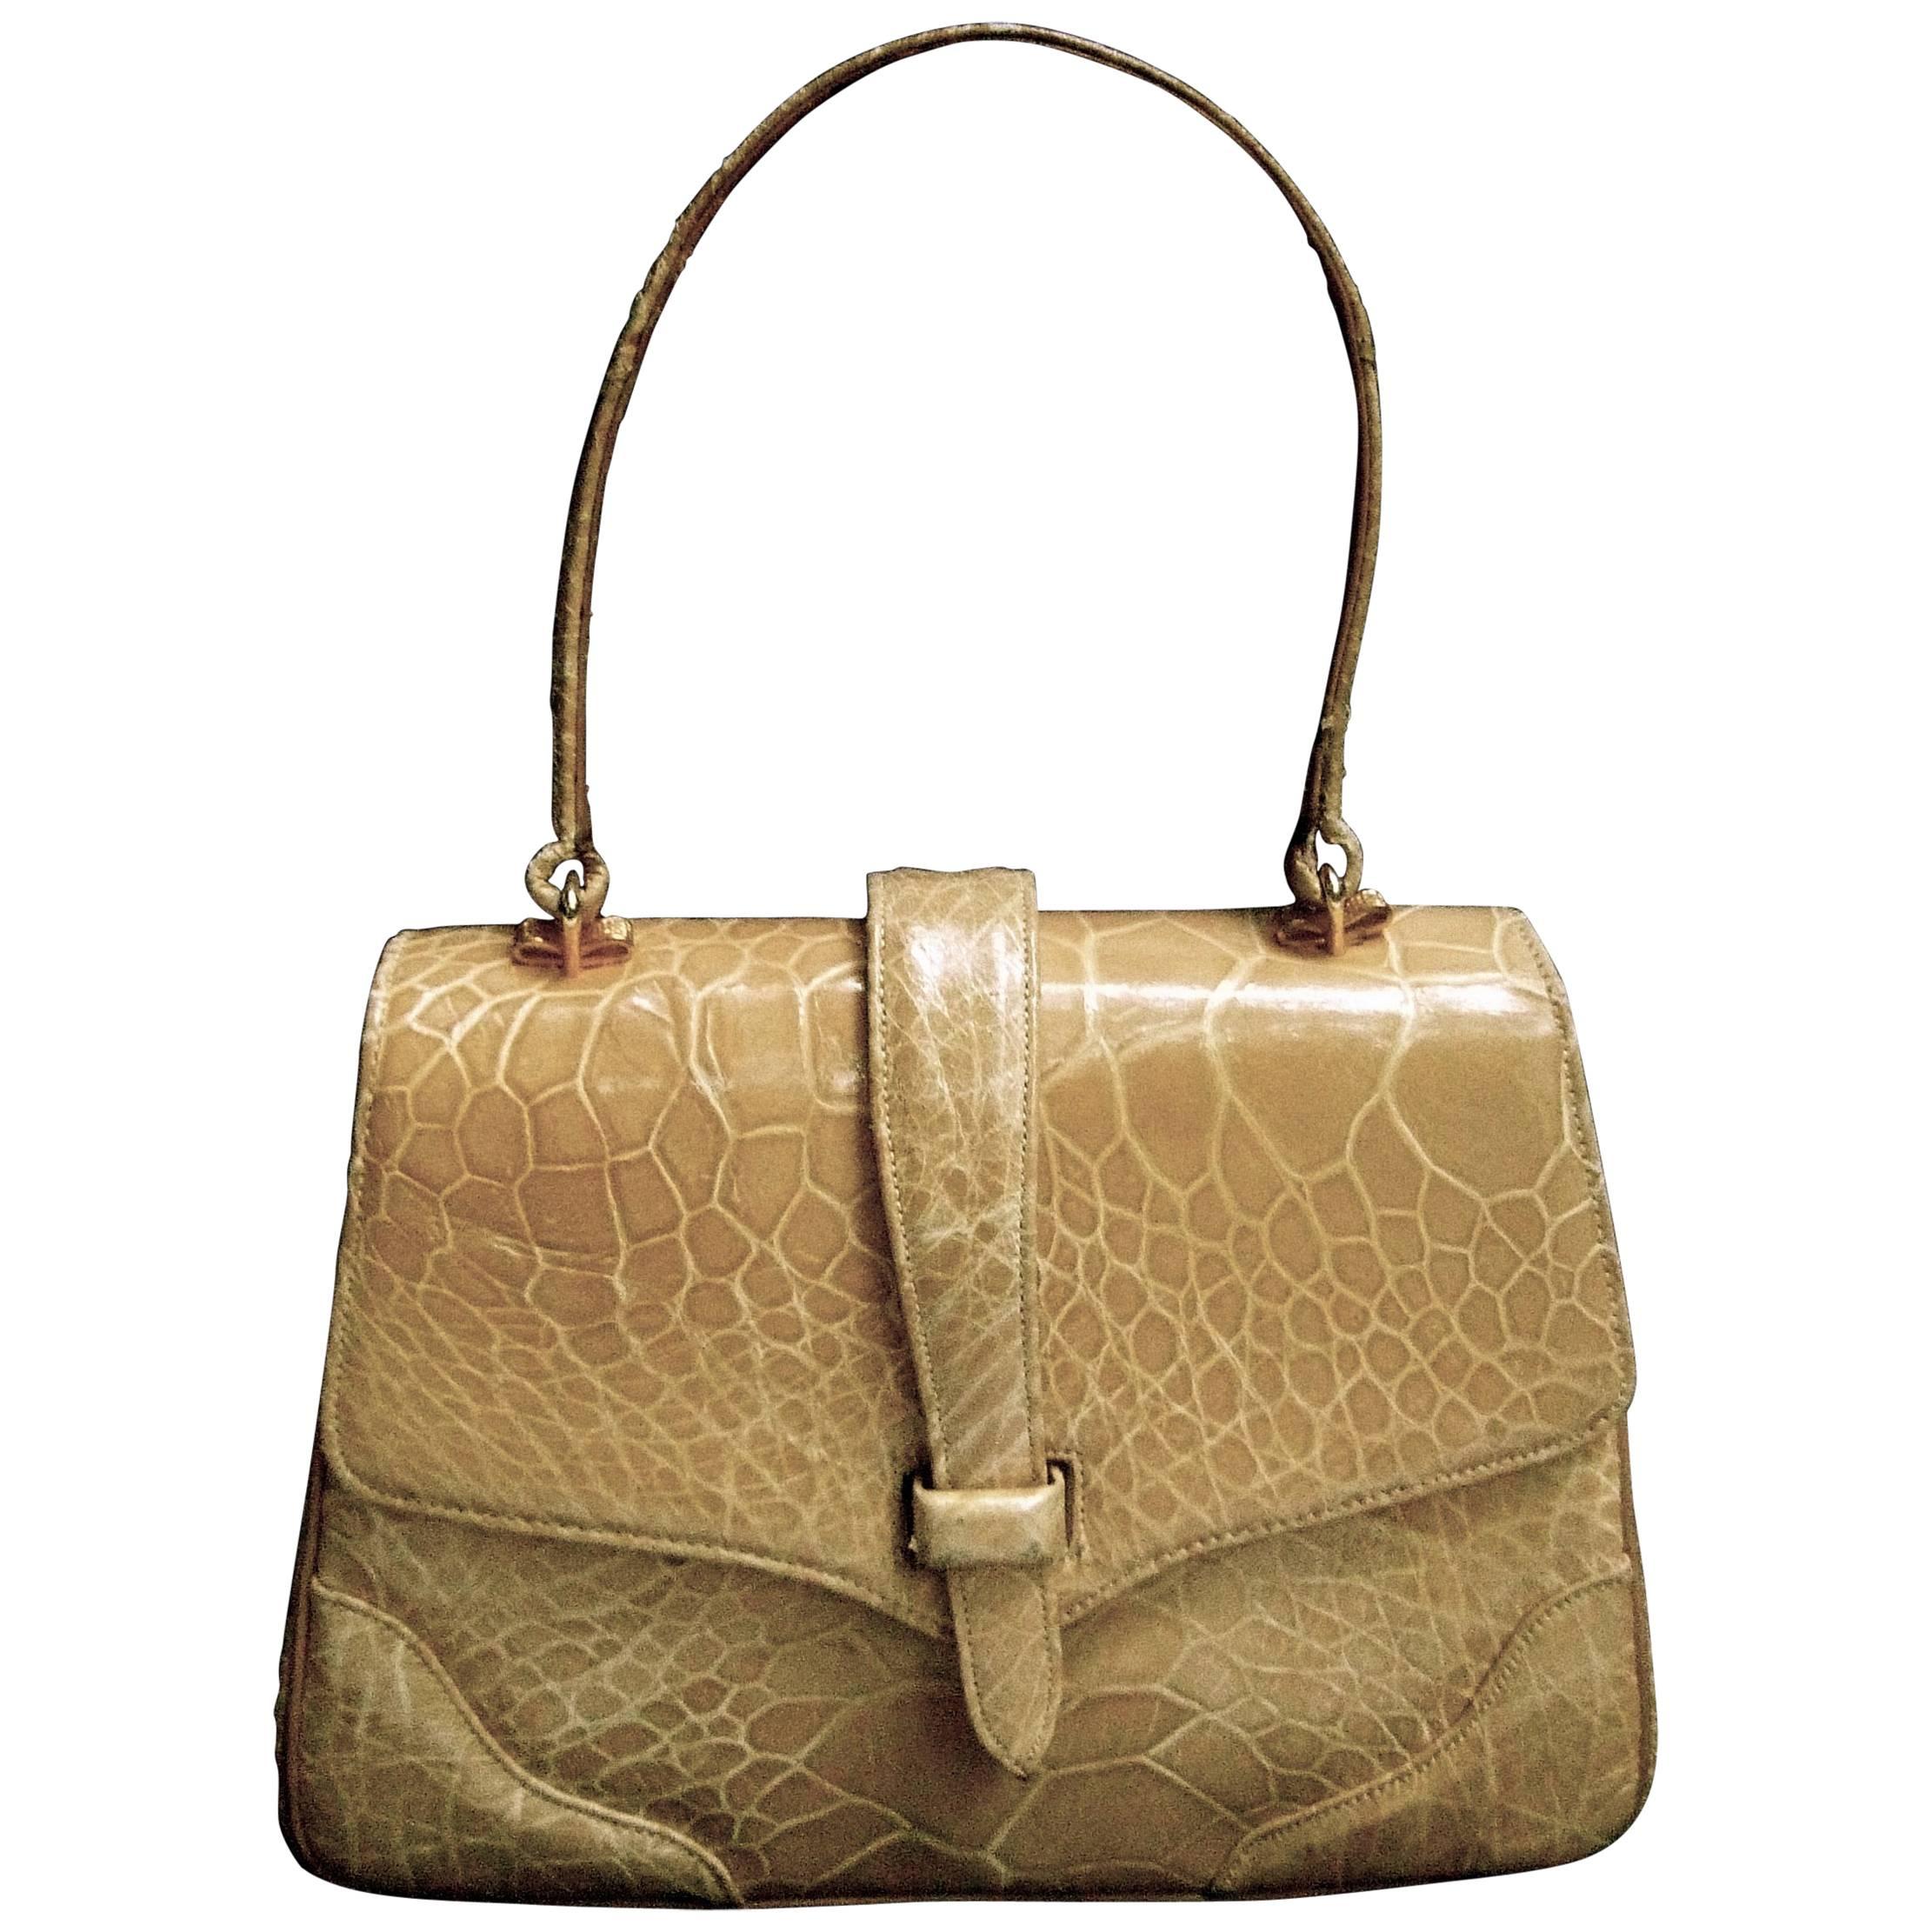 Lucille de Paris Stylish Reptile Handbag c 1960